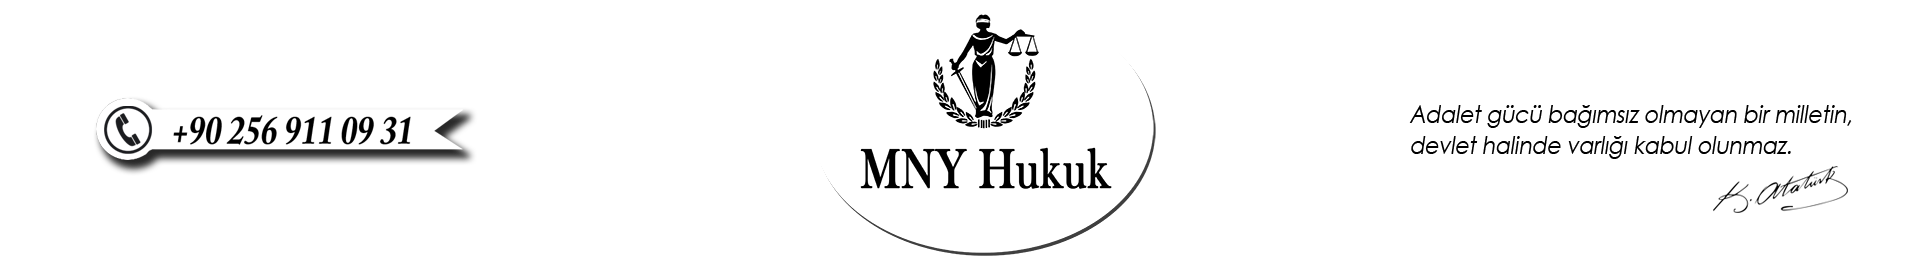 mny logo